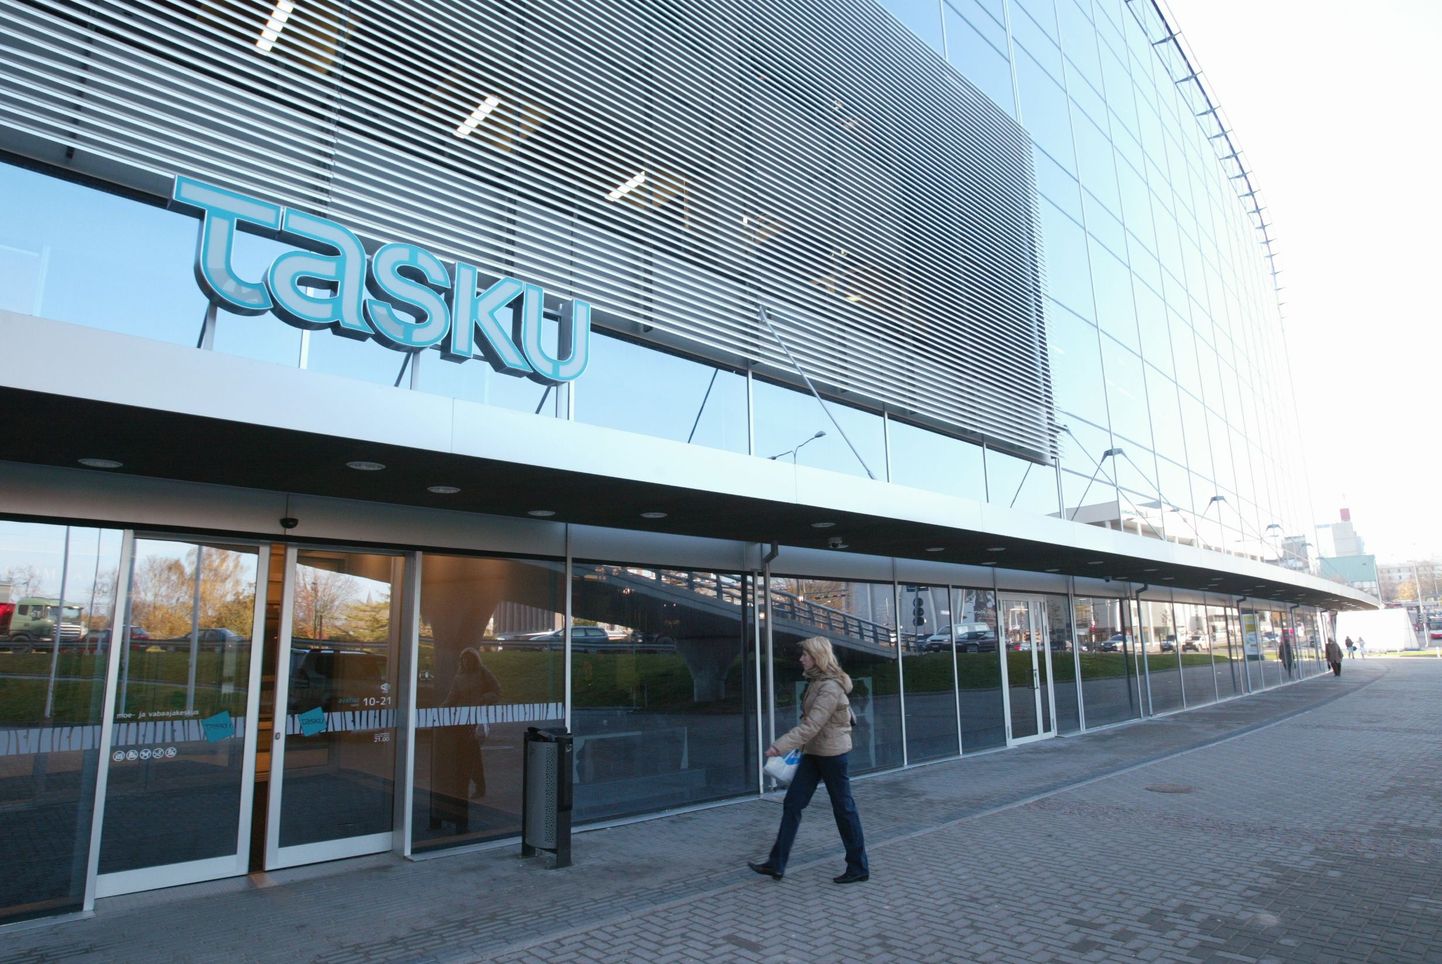 Kohtute raamatupidamiskeskus otsustas üürida endale uued ruumid reformierakondlase Neinar Seli firmale kuuluvas Tartu Tasku keskuses.